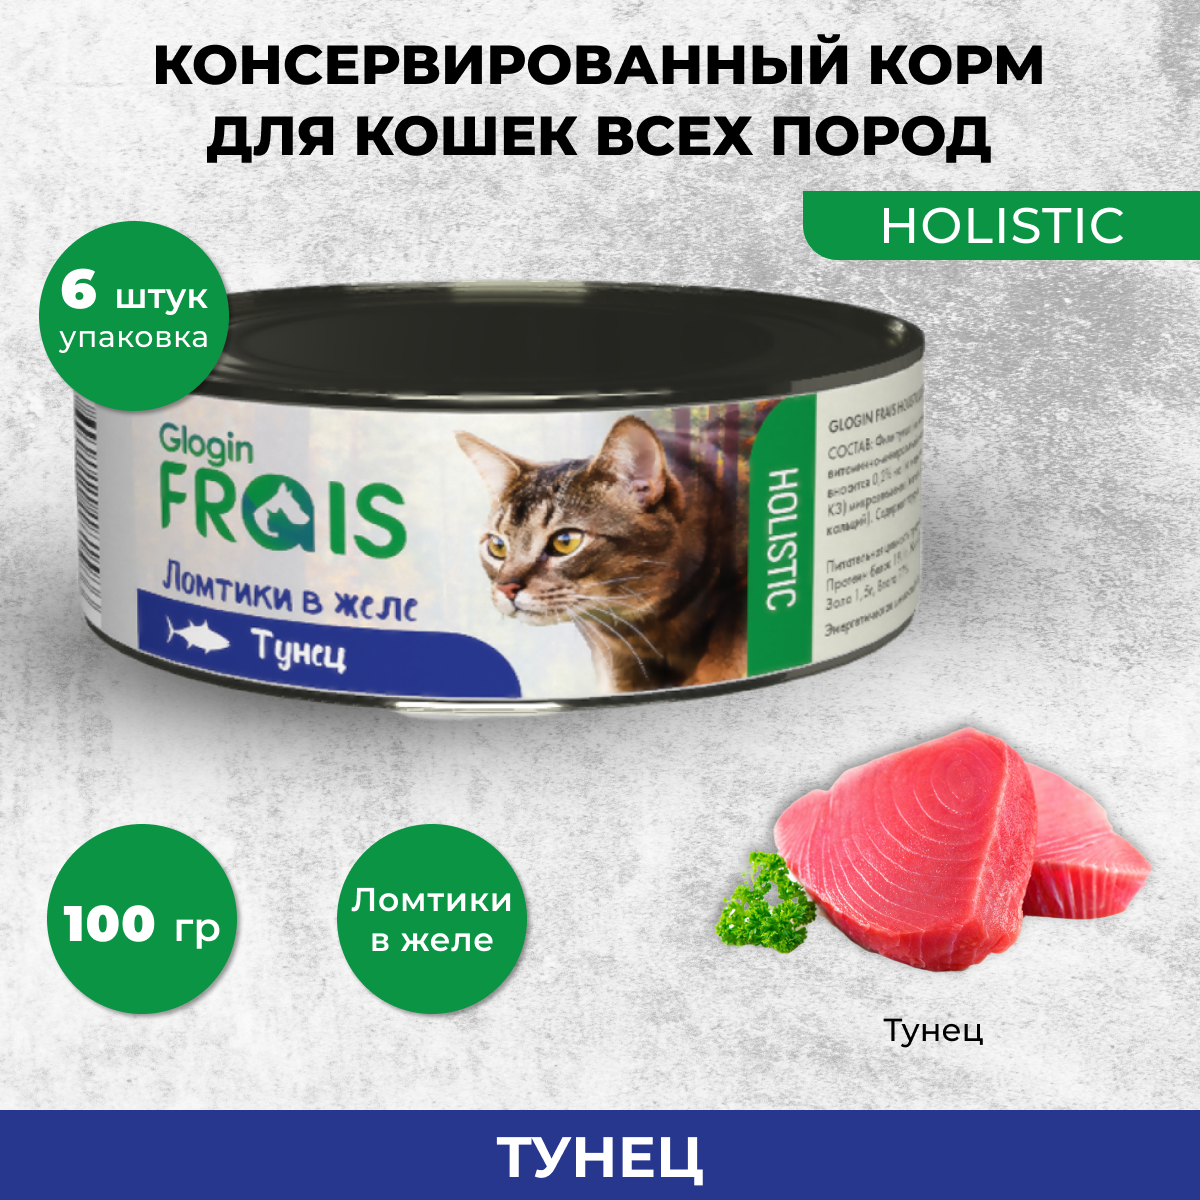 Консервы для кошек Frais Holistic Glogin ломтики в желе, тунец, 6 шт по 100 г